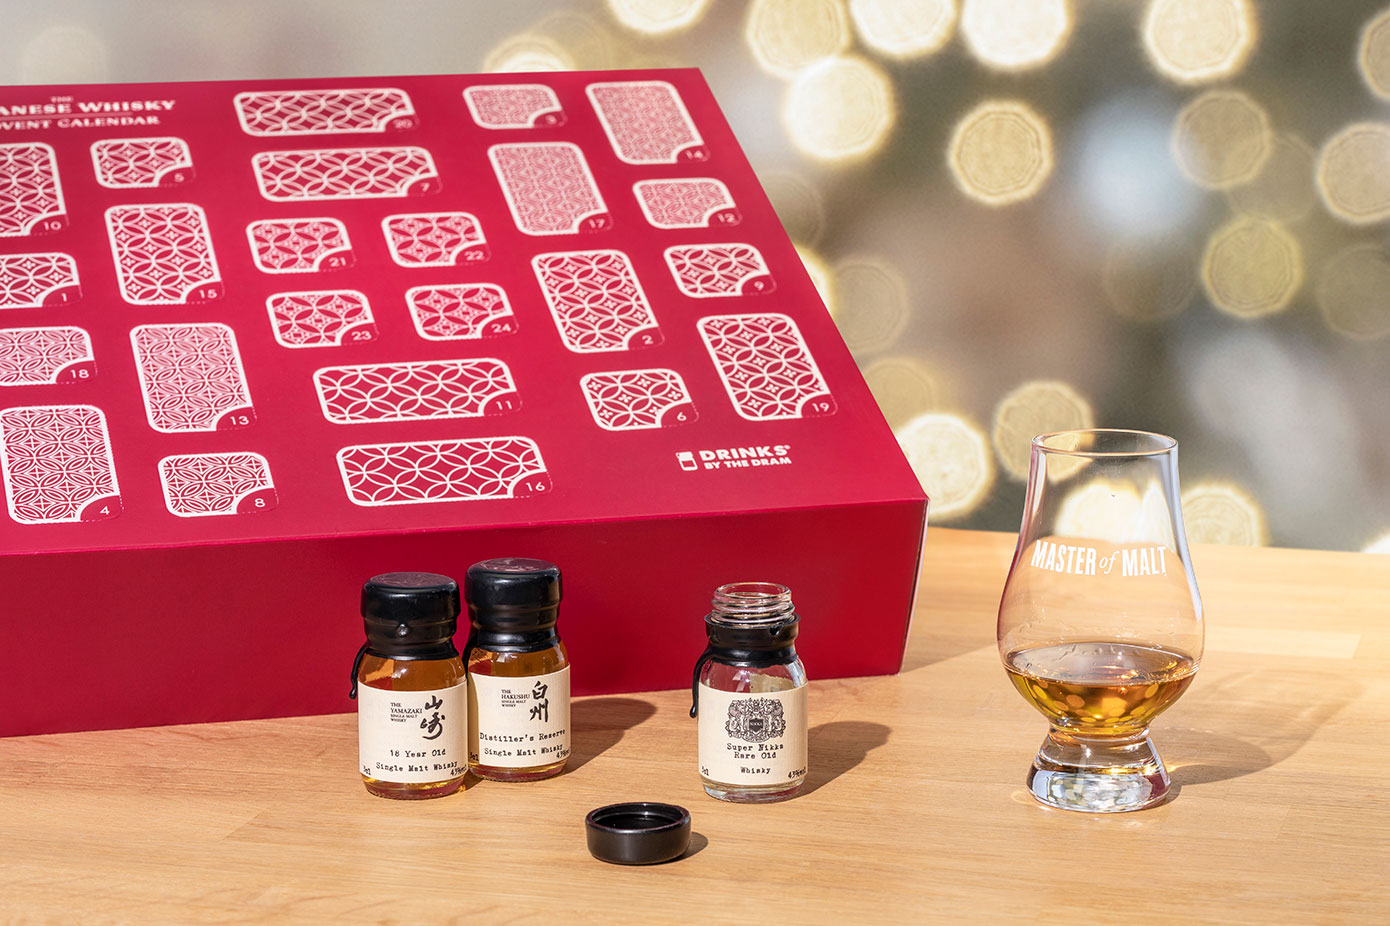 聖誕倒數月曆 advent calendar 聖誕月曆 聖誕禮物 聖誕套裝
Master of Malt - Japanese Whisky Advent Calendar (2020 Edition) V2